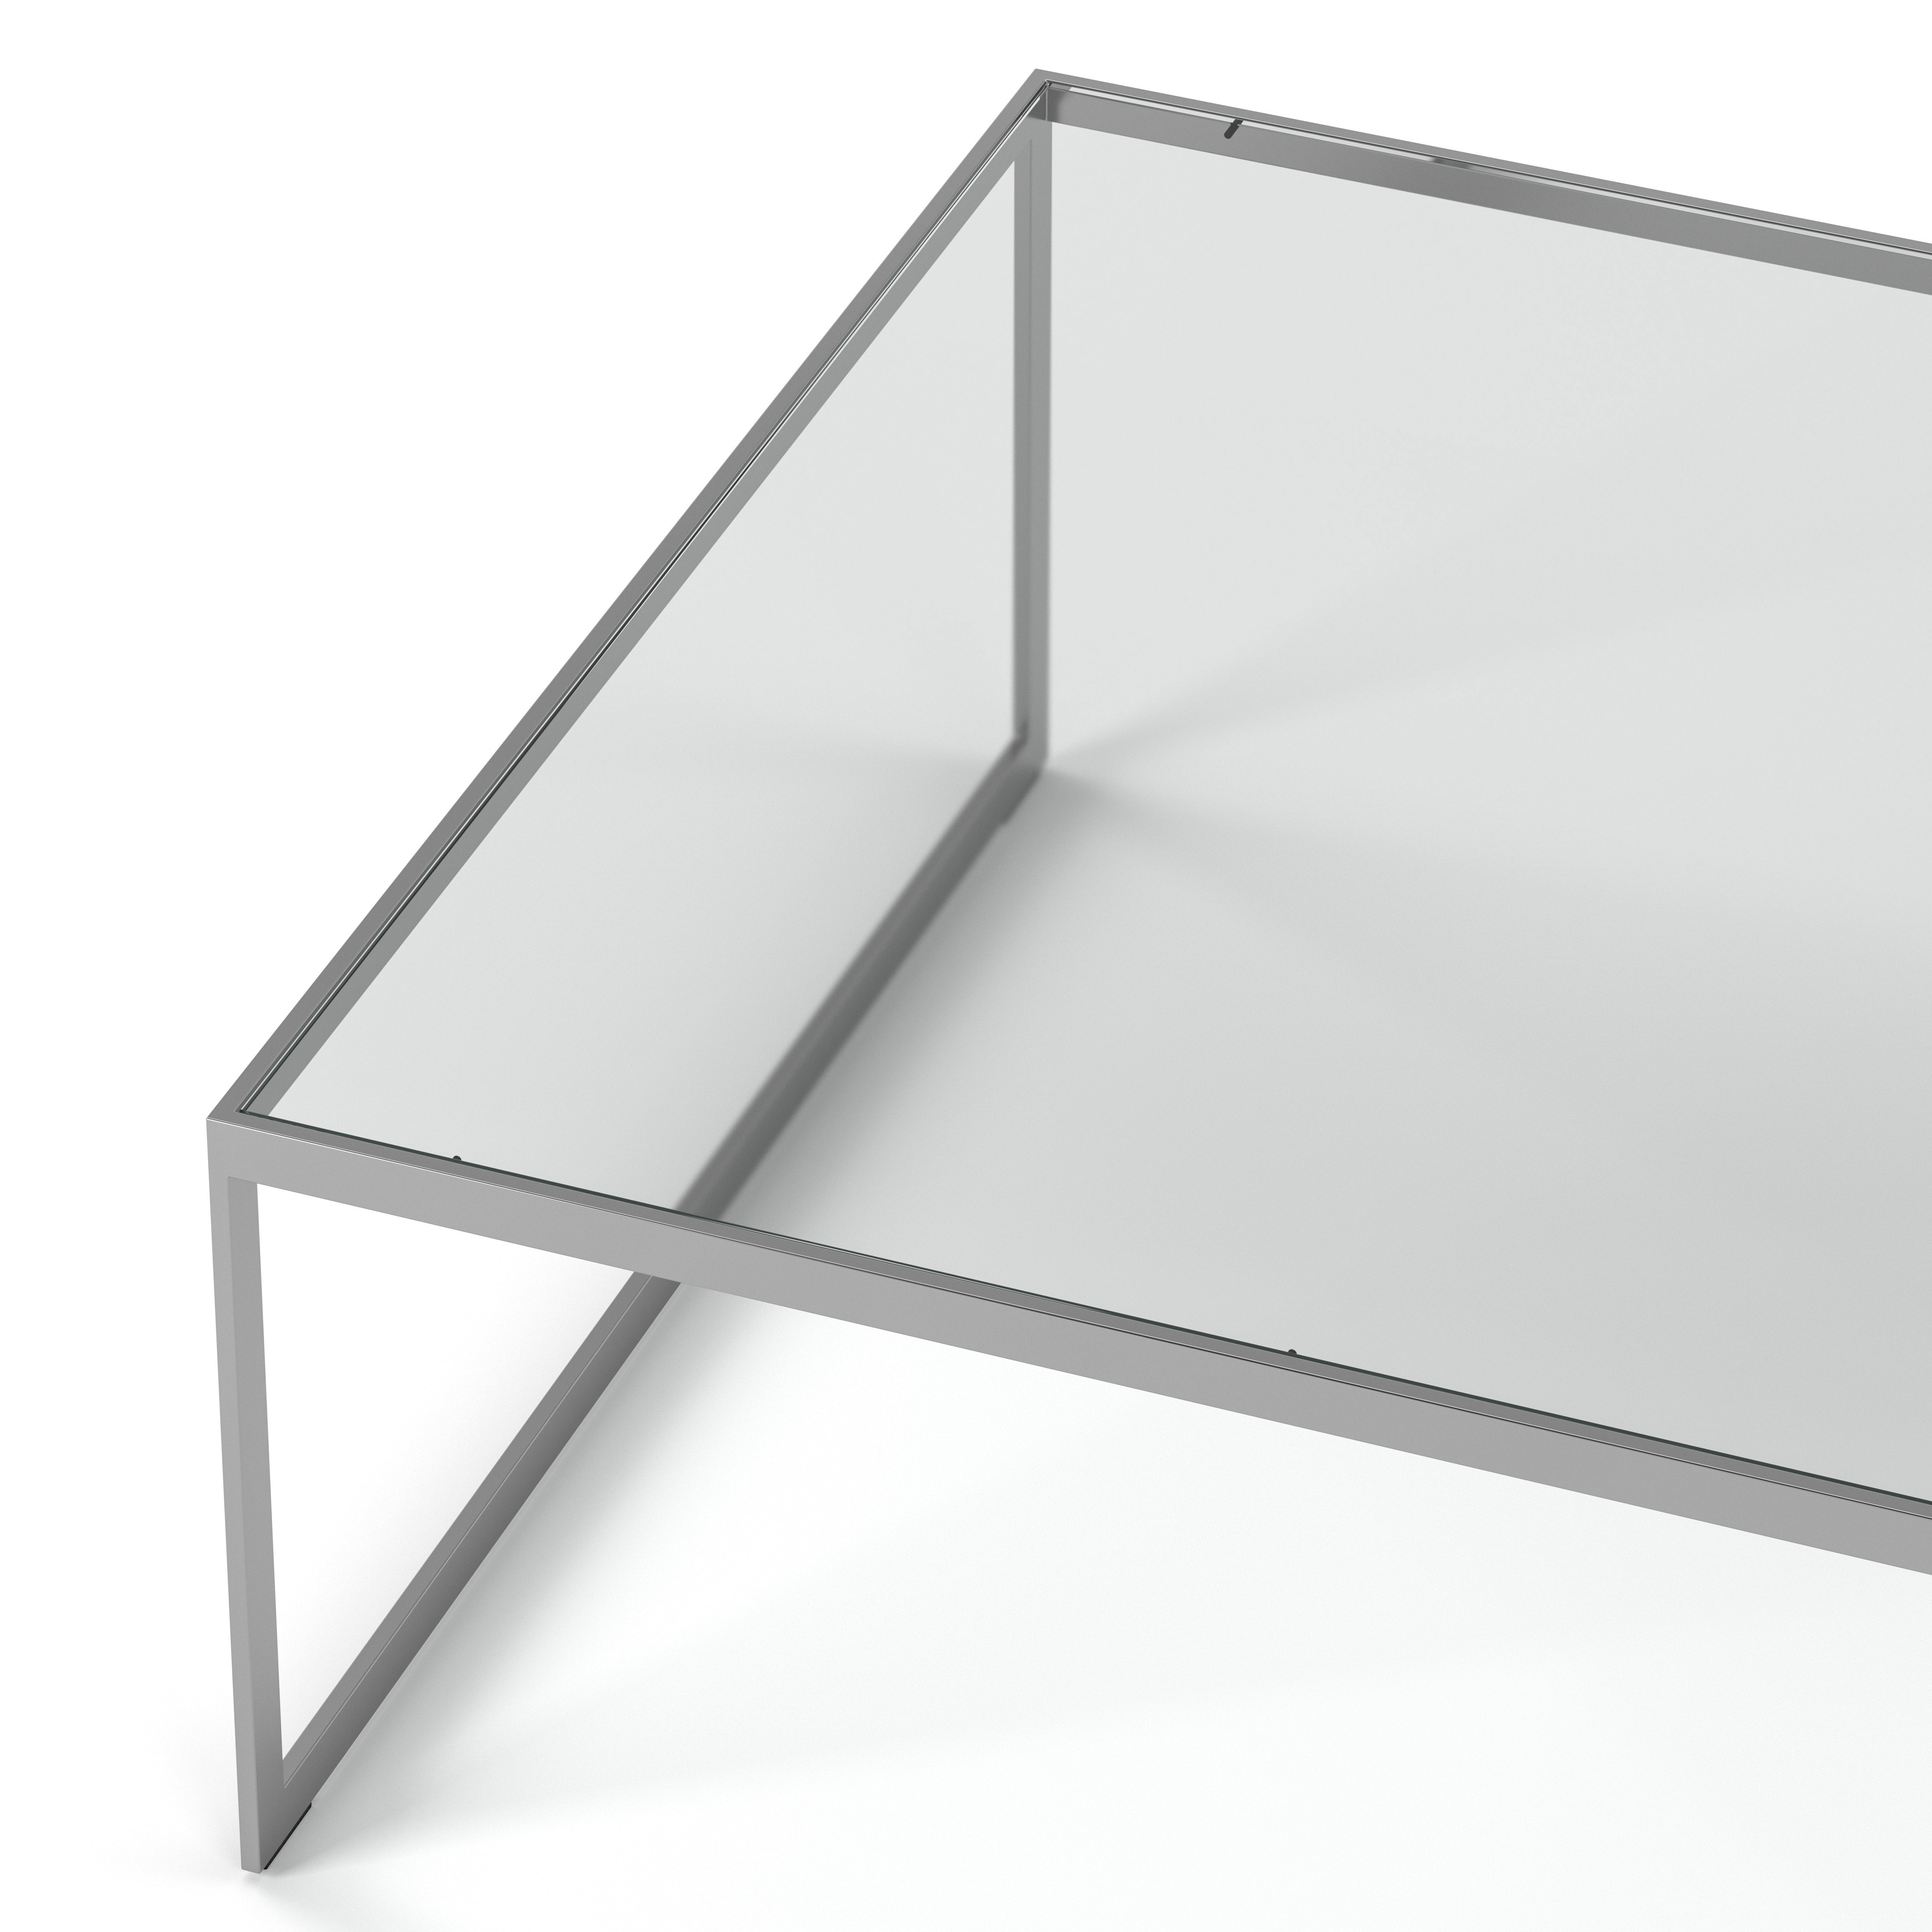 Englesson Bord Square Soffbord Kvadratiskt #färg_Silvergrå Metall & Glas #Colour_Silvergrå Metall & Glas